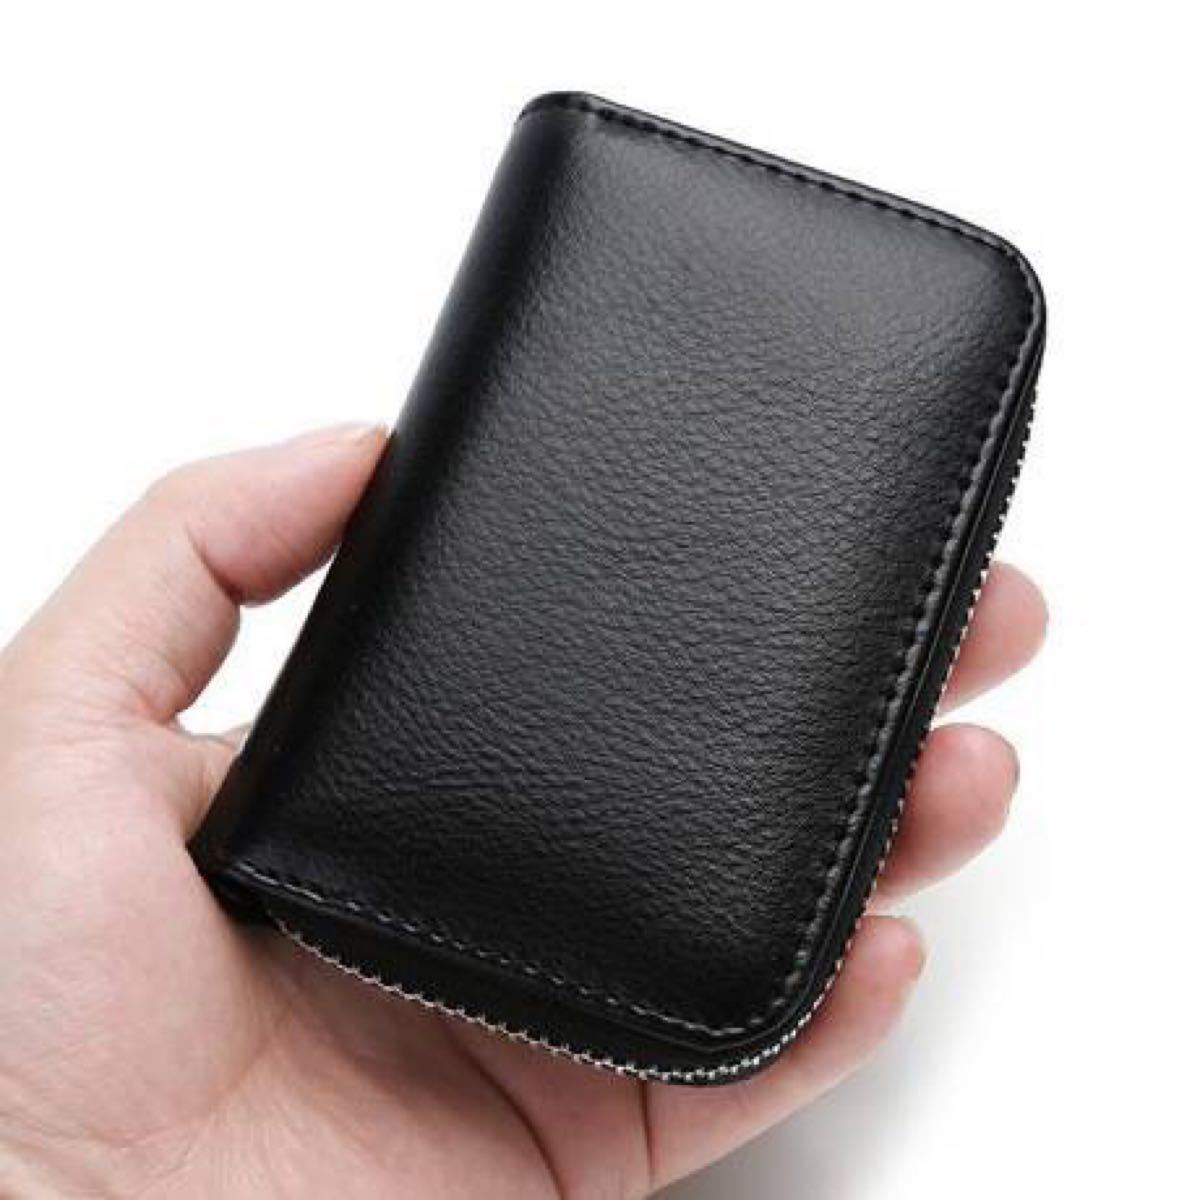 カードケース 小銭入れ 大容量 RFID レザー 財布 カード入れ 本革 コインケース ラウンドファスナー 磁気防止